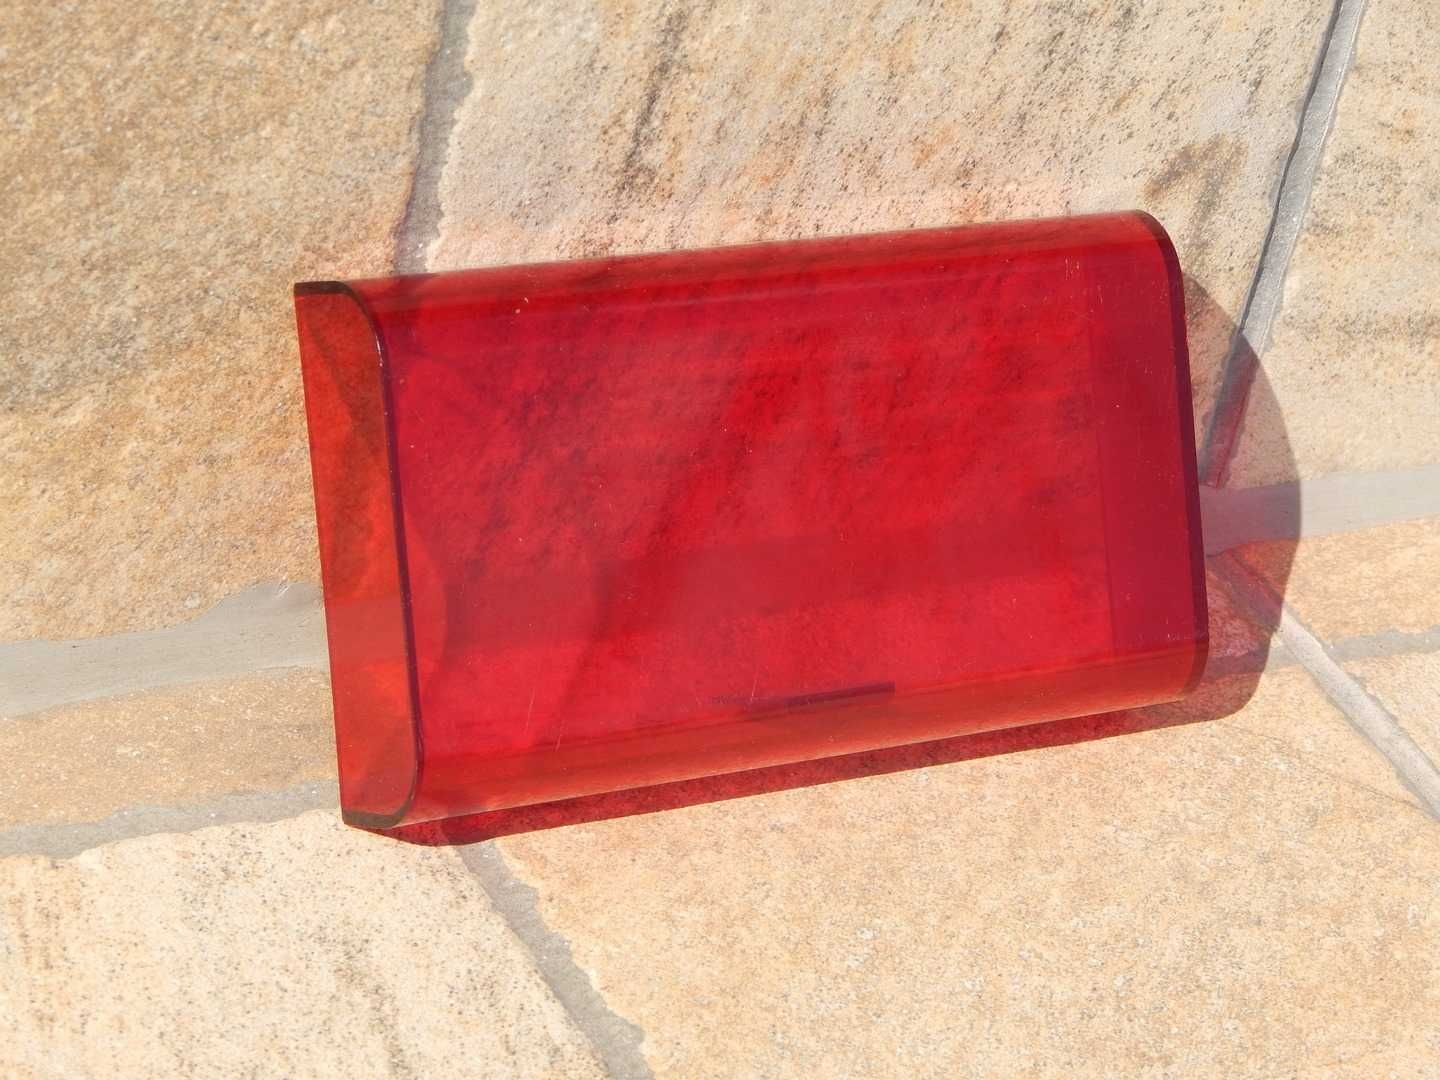 Capac transparent plastic rosu dimensiuni 14.6 x 8.1 x 2.5 cm